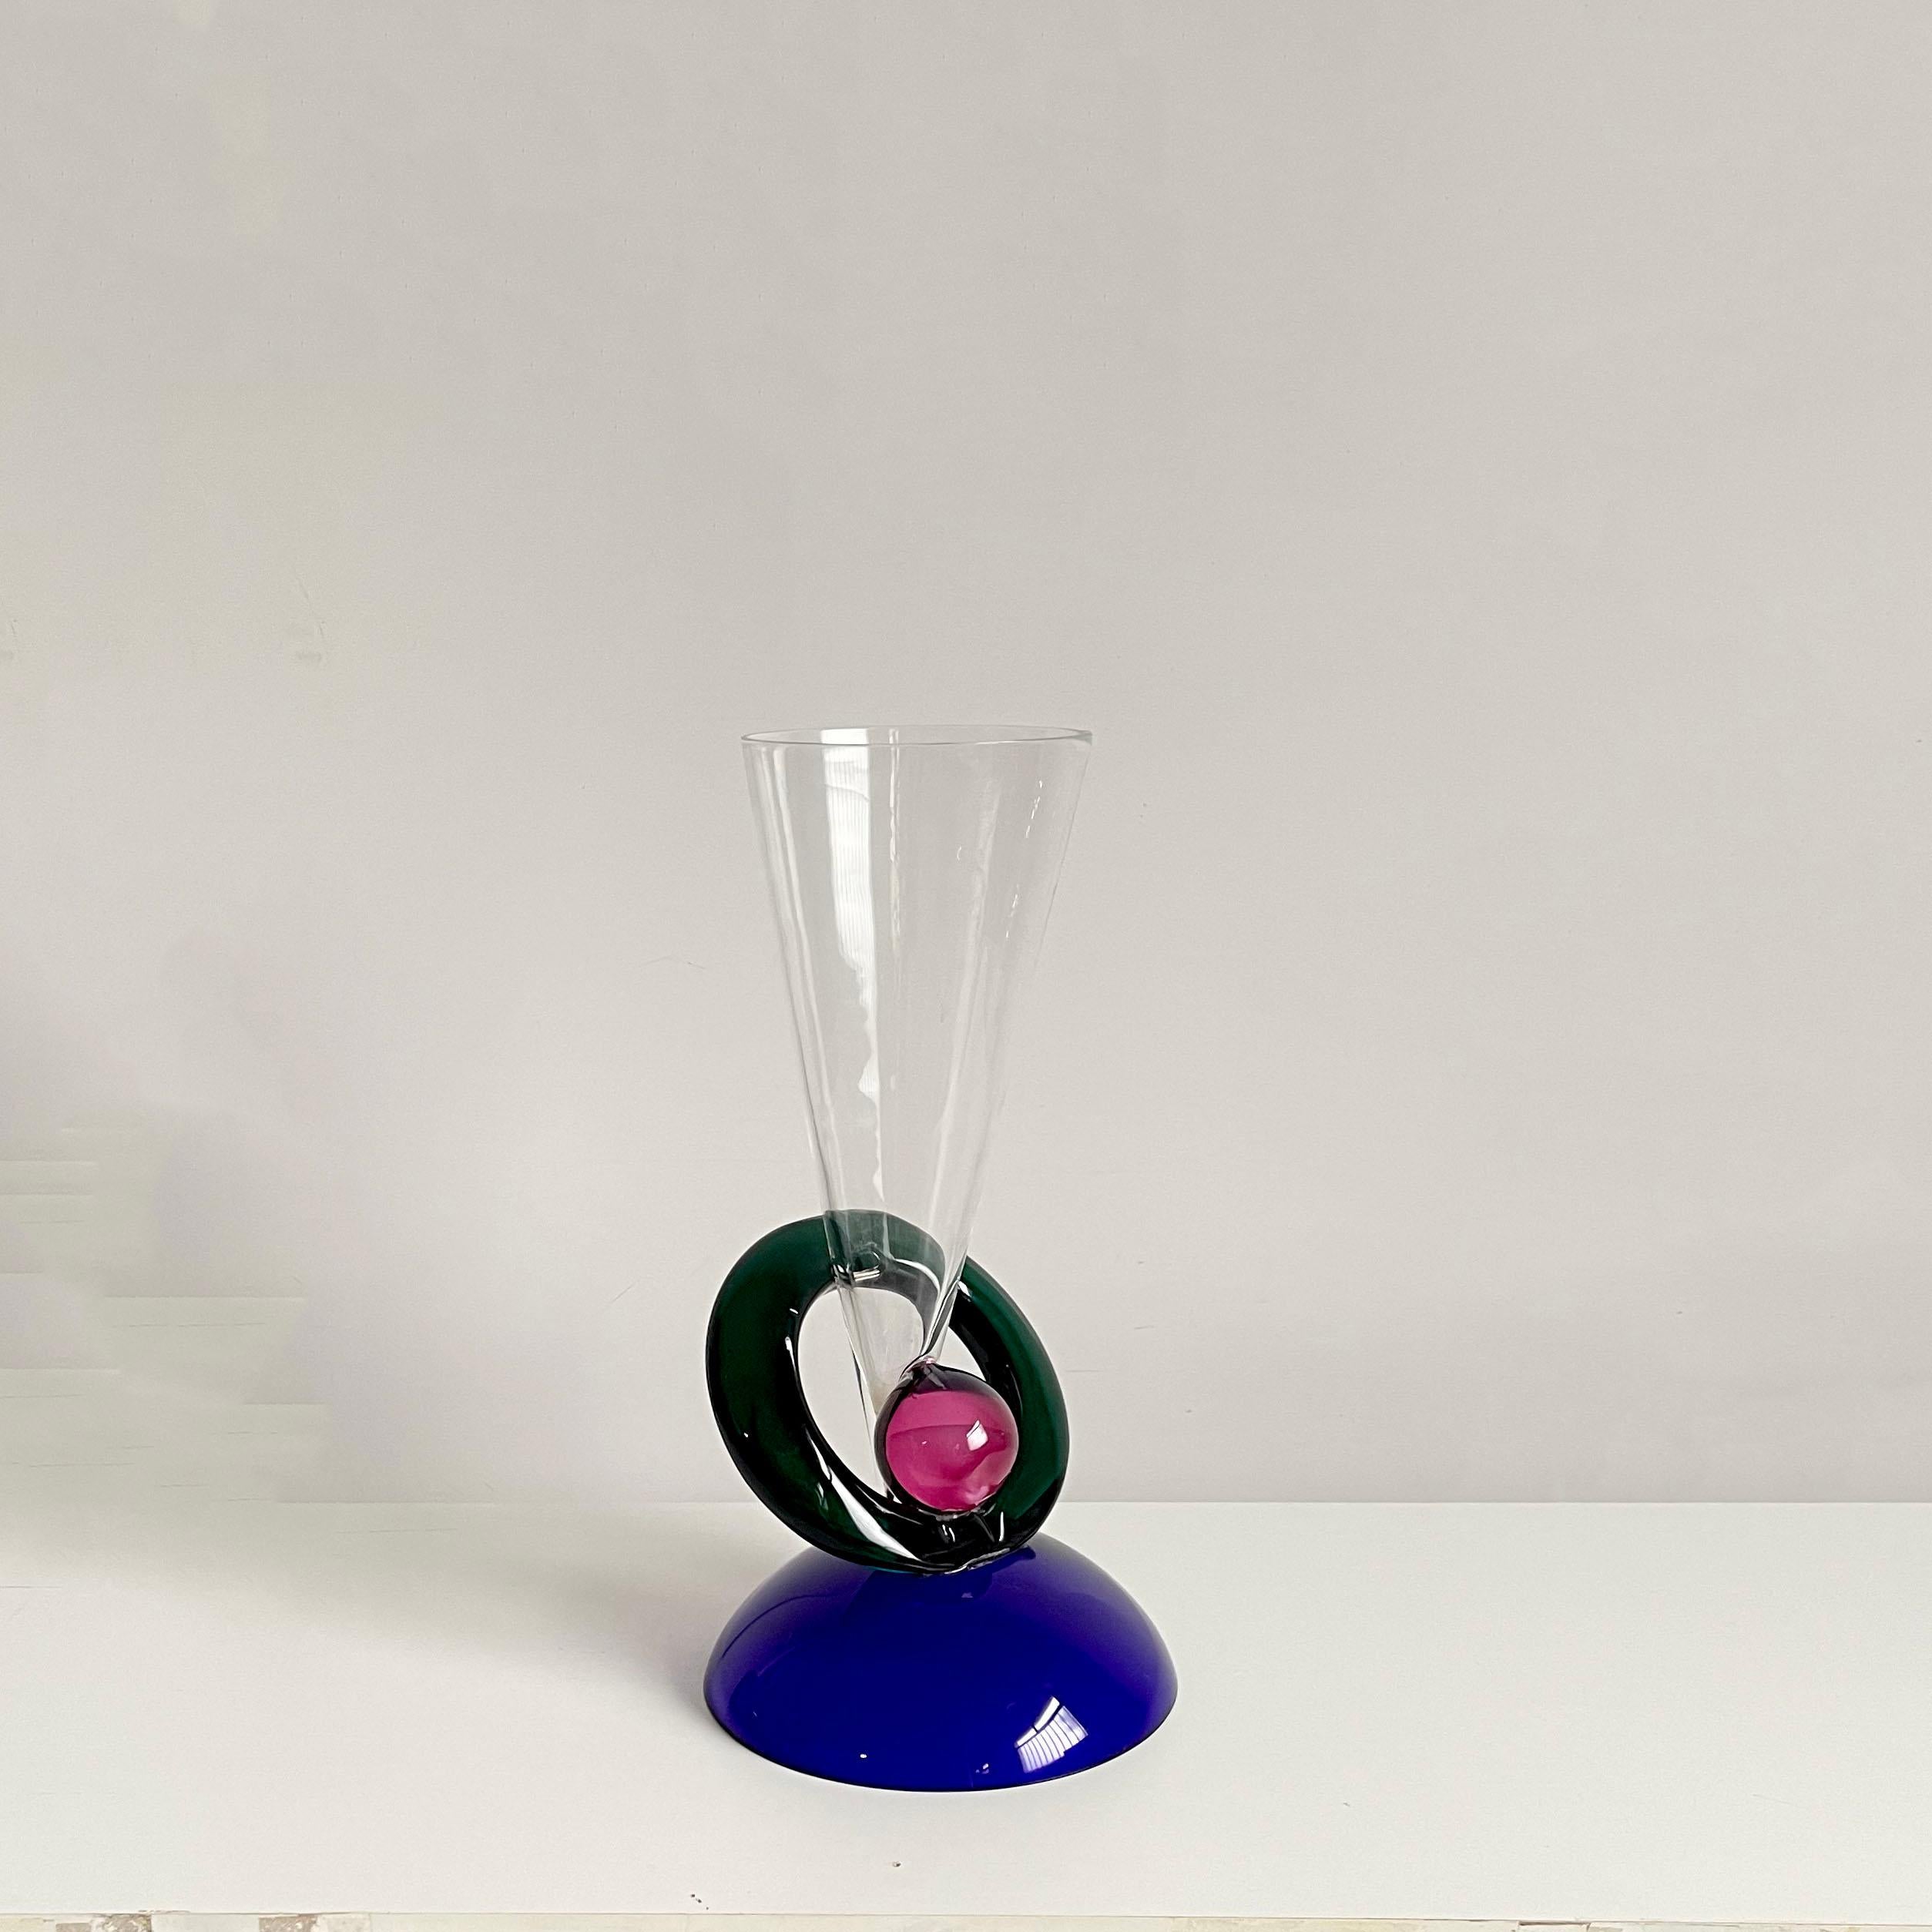 Superbe grand vase en verre de Murano Design/One attribué à Ettore Sottsass, Italie, années 1980.

Design/One : un design audacieux et percutant. Une belle pièce sculpturale postmoderne de grande taille.


Le vase est dans un très bon état vintage,